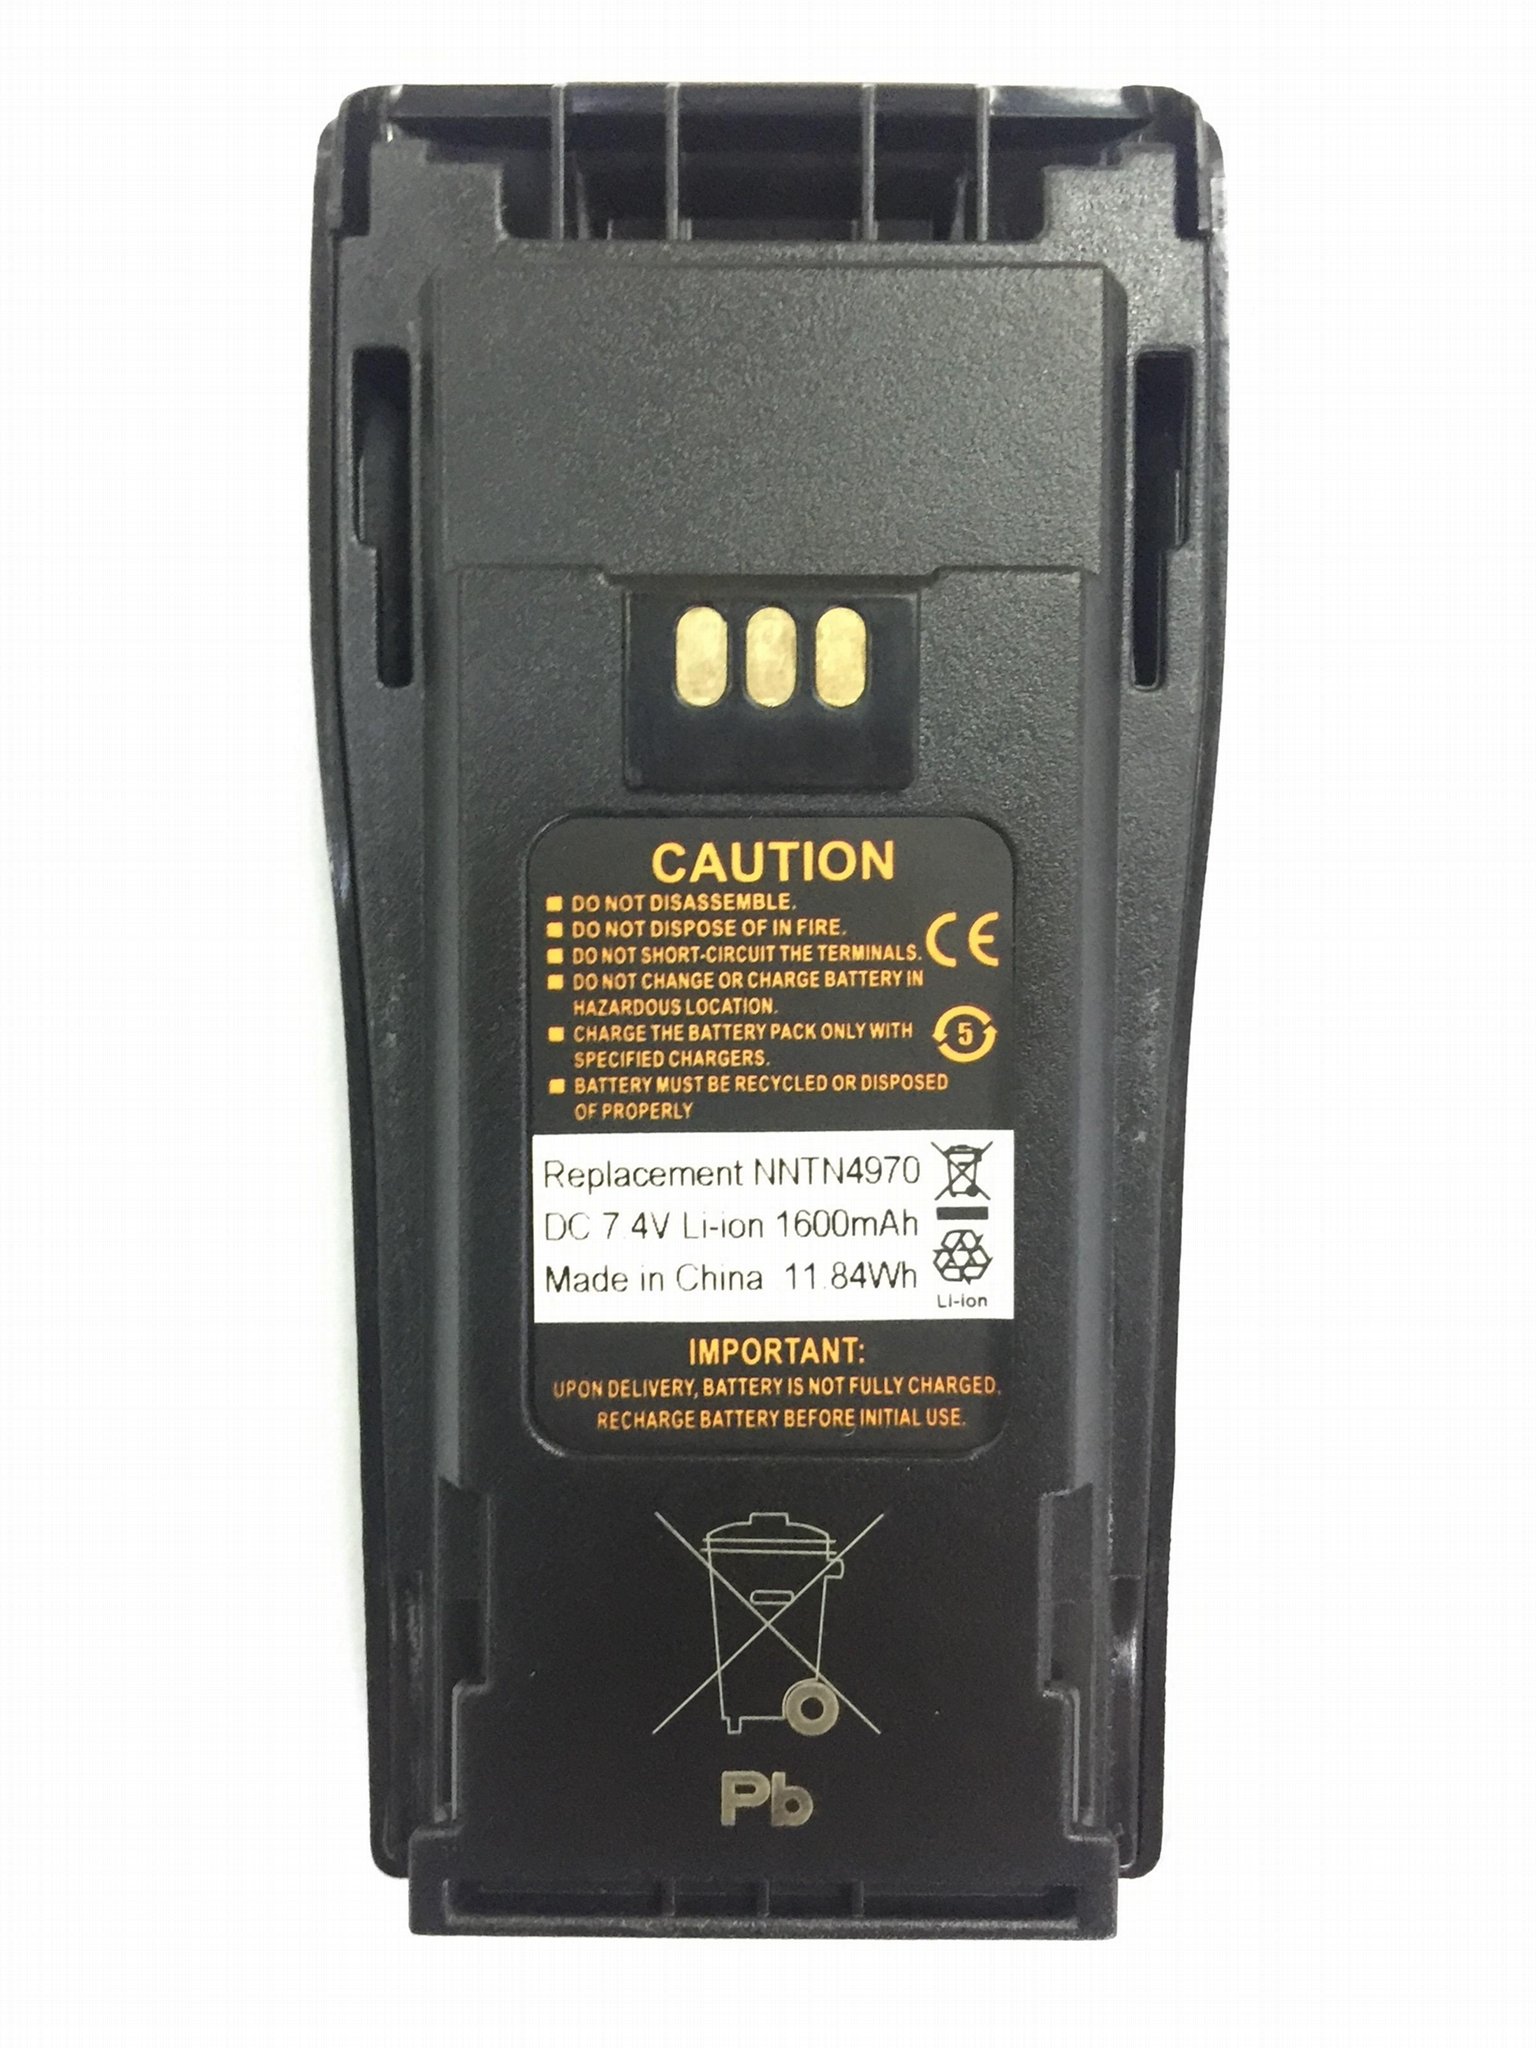 NNTN4970 battery For EP450, CP150, CP200, CP040, CP140, CP150, CP160, CP180 1